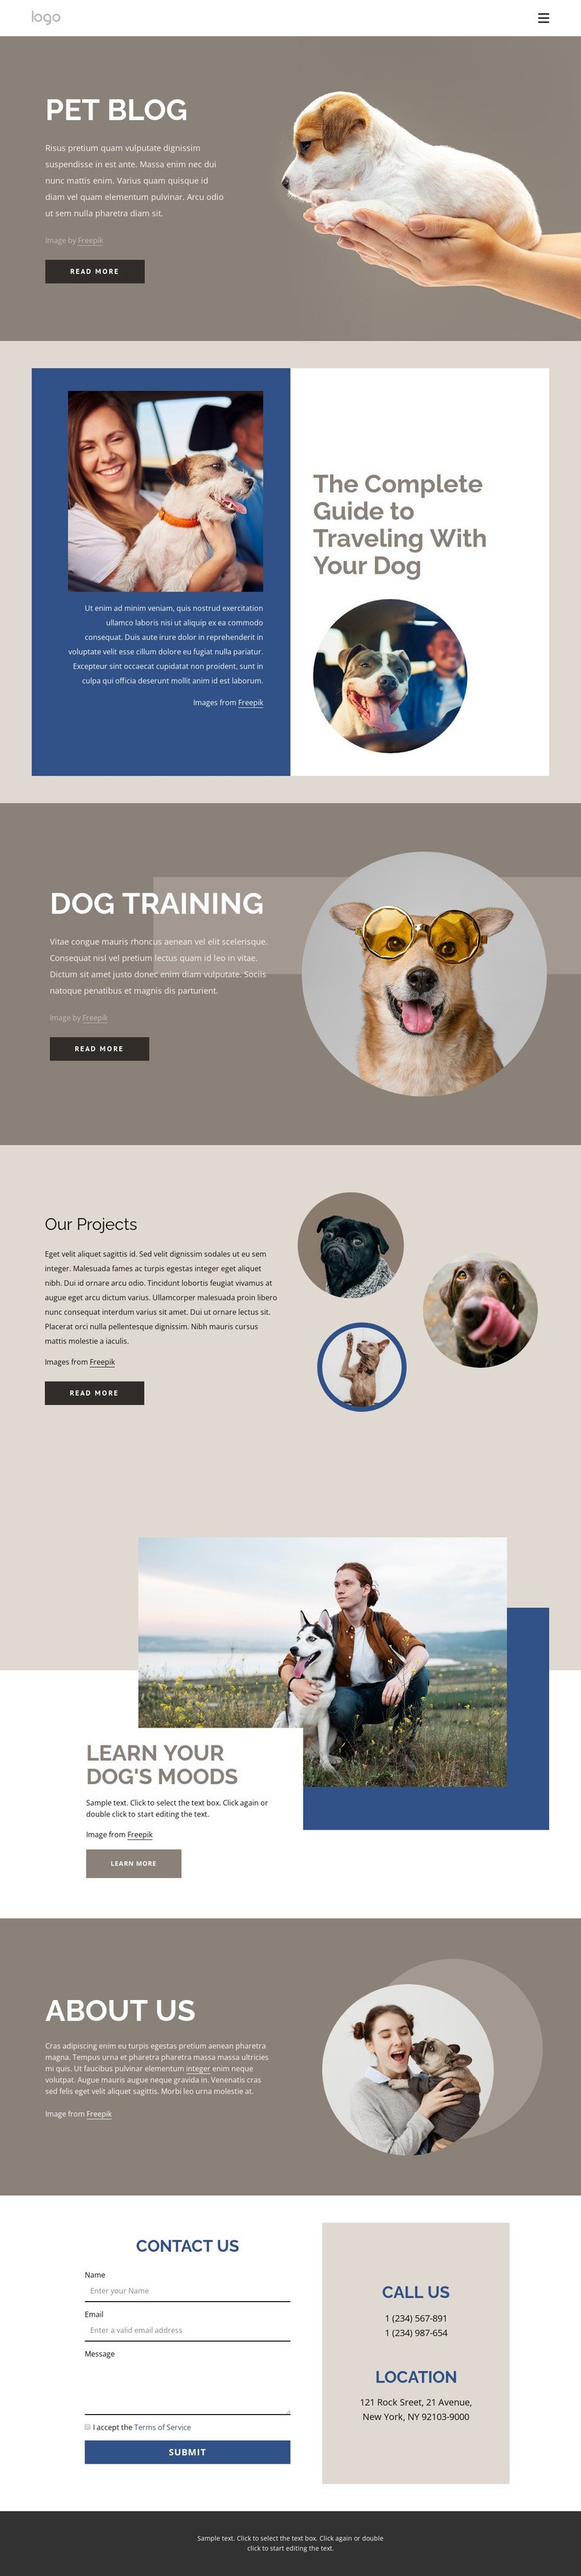 Pet Blog Web Page Design